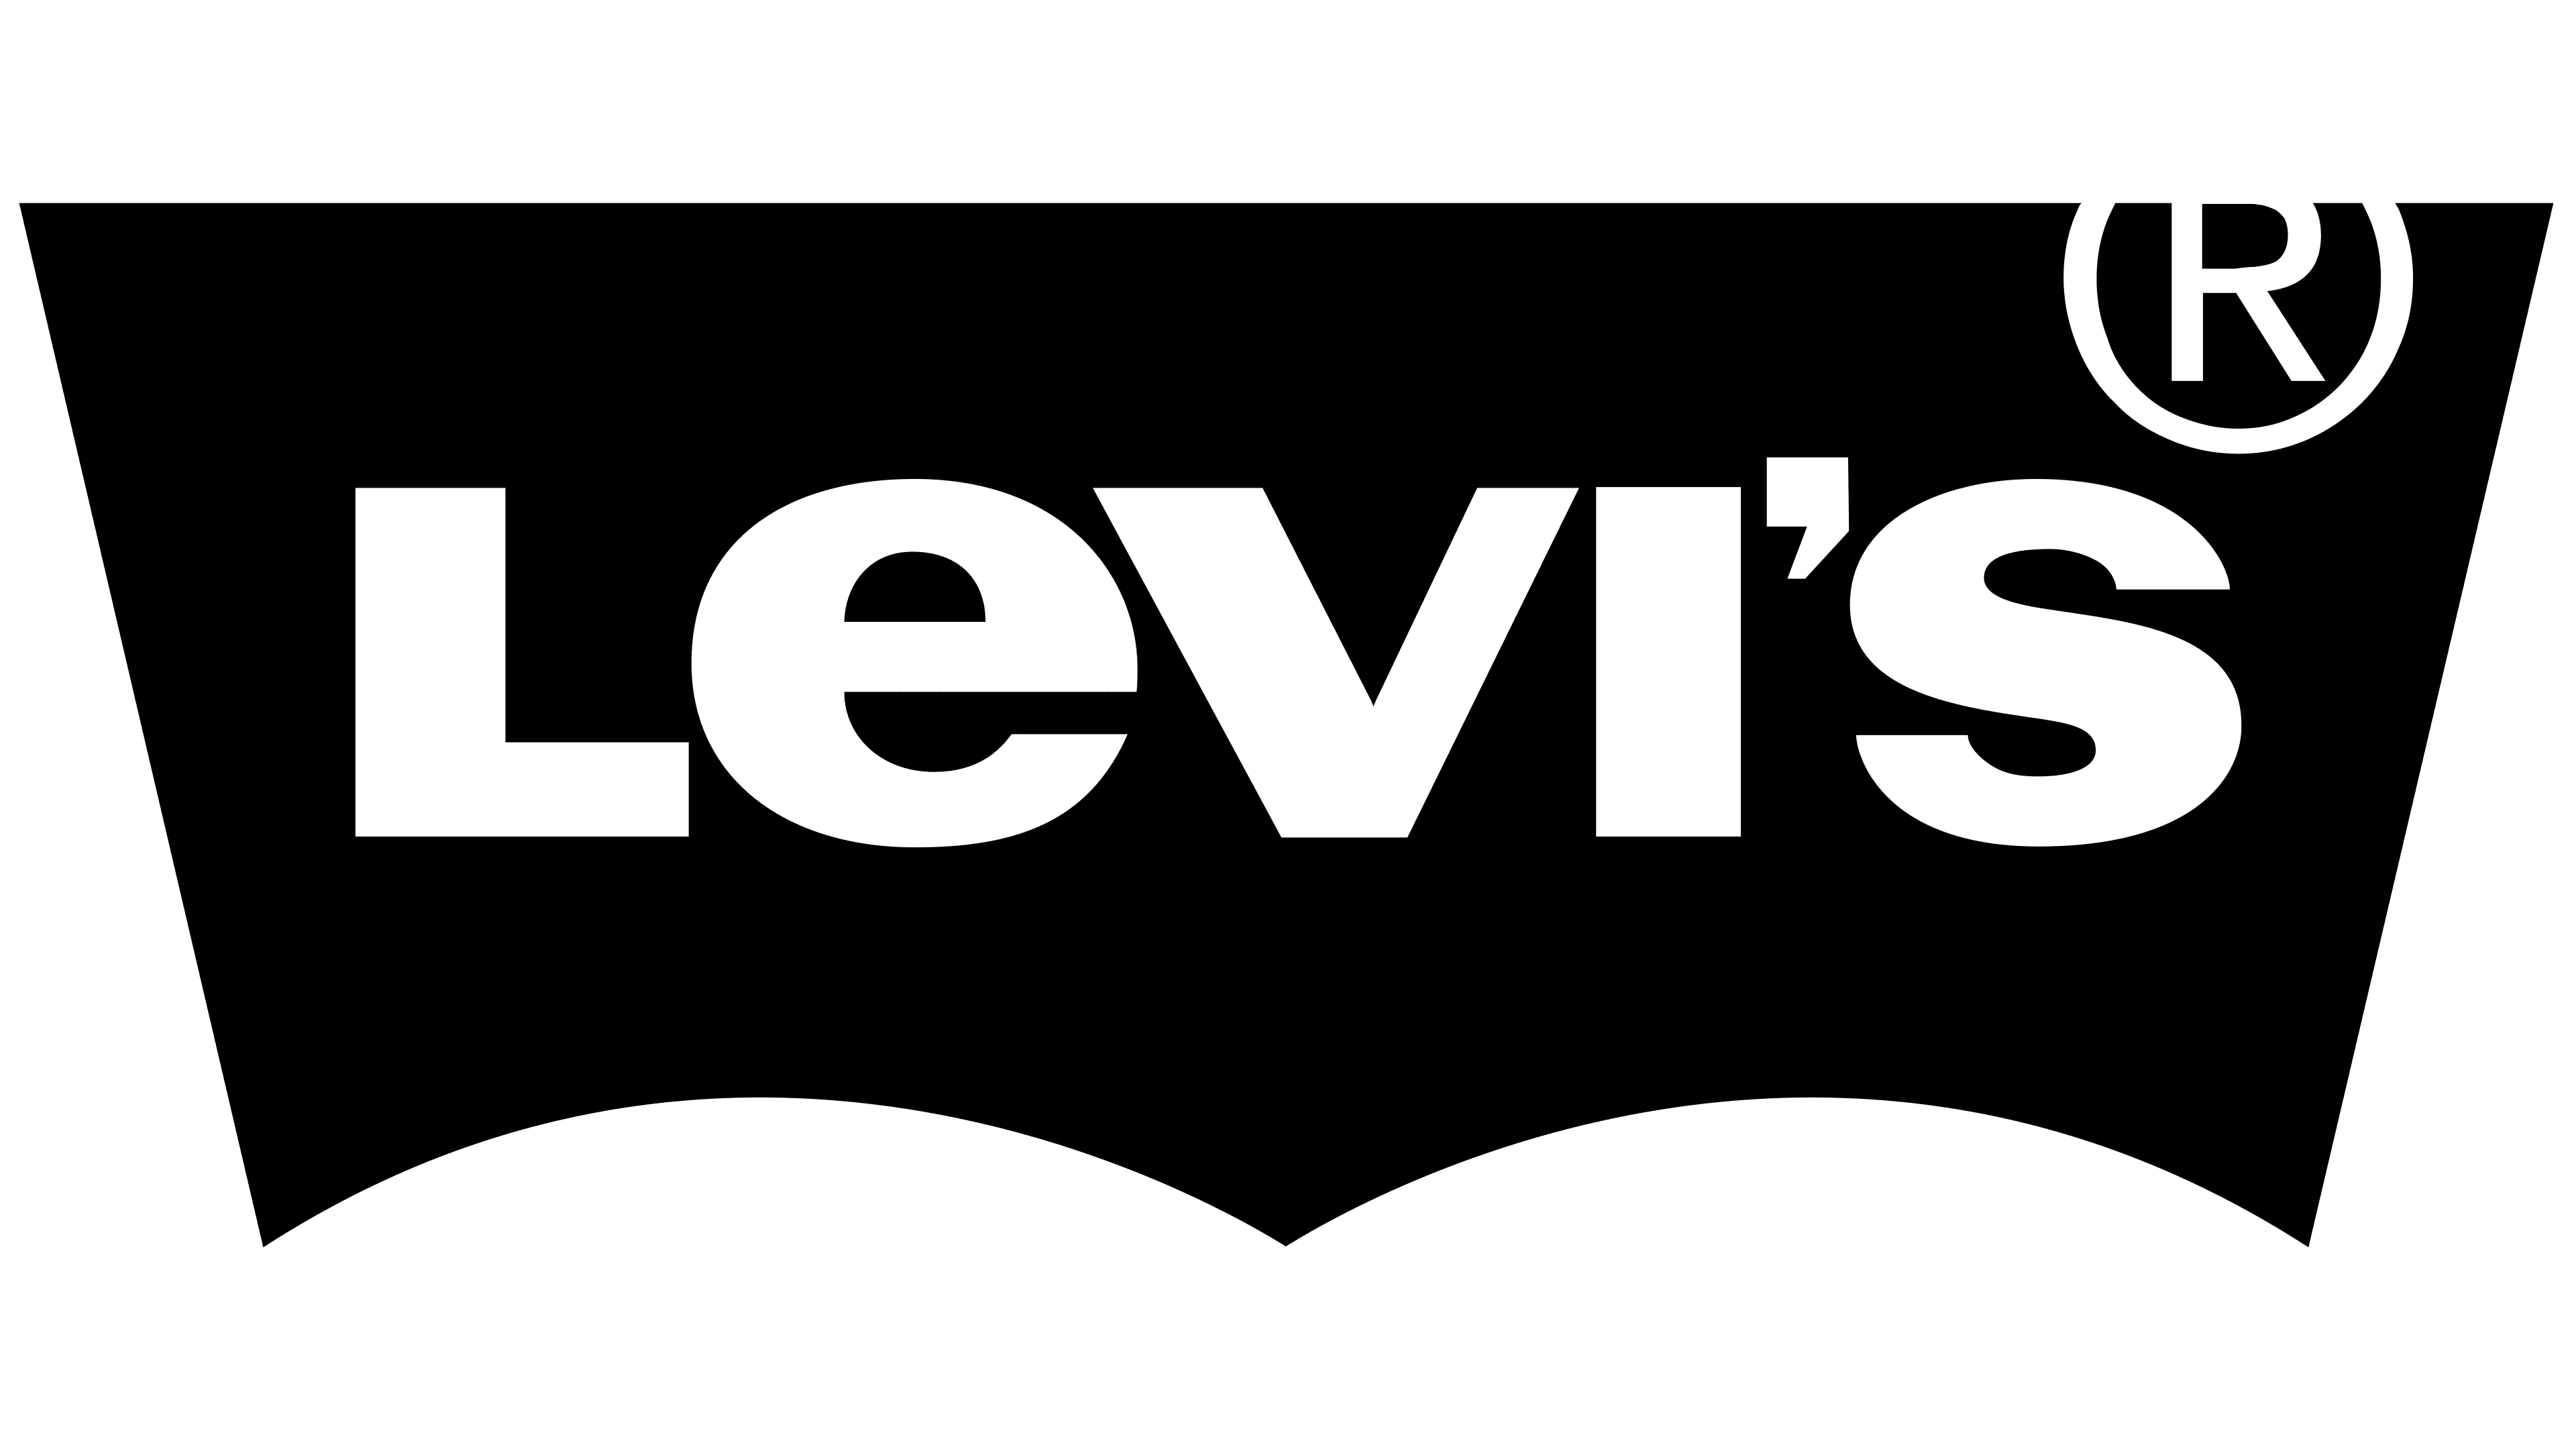 original levis logo